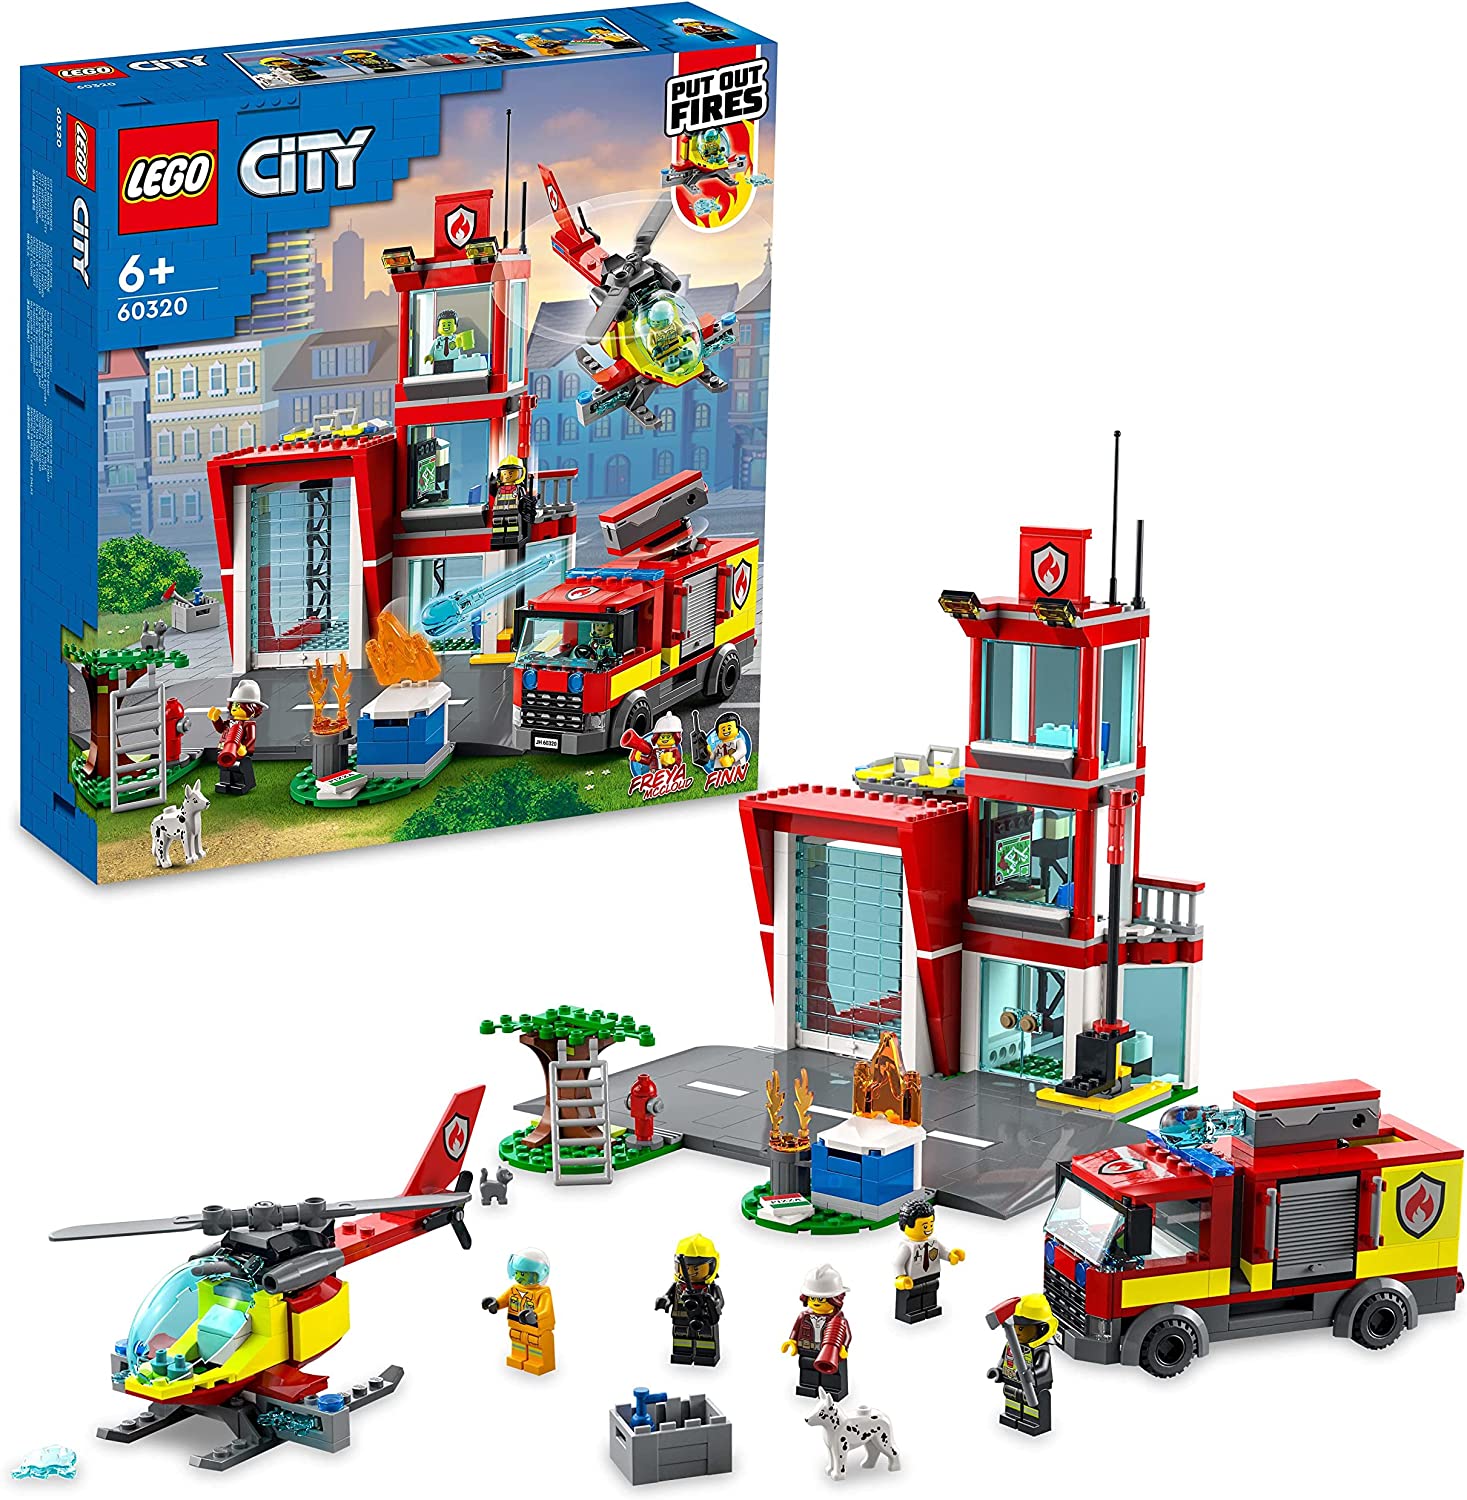 LEGO 60320 City Feuerwache, Feuerwehr-Spielzeug für Kinder ab 6 Jahren mit Garage, Feuerwehrauto und Hubschrauber, Geschenkidee zu Weihachten